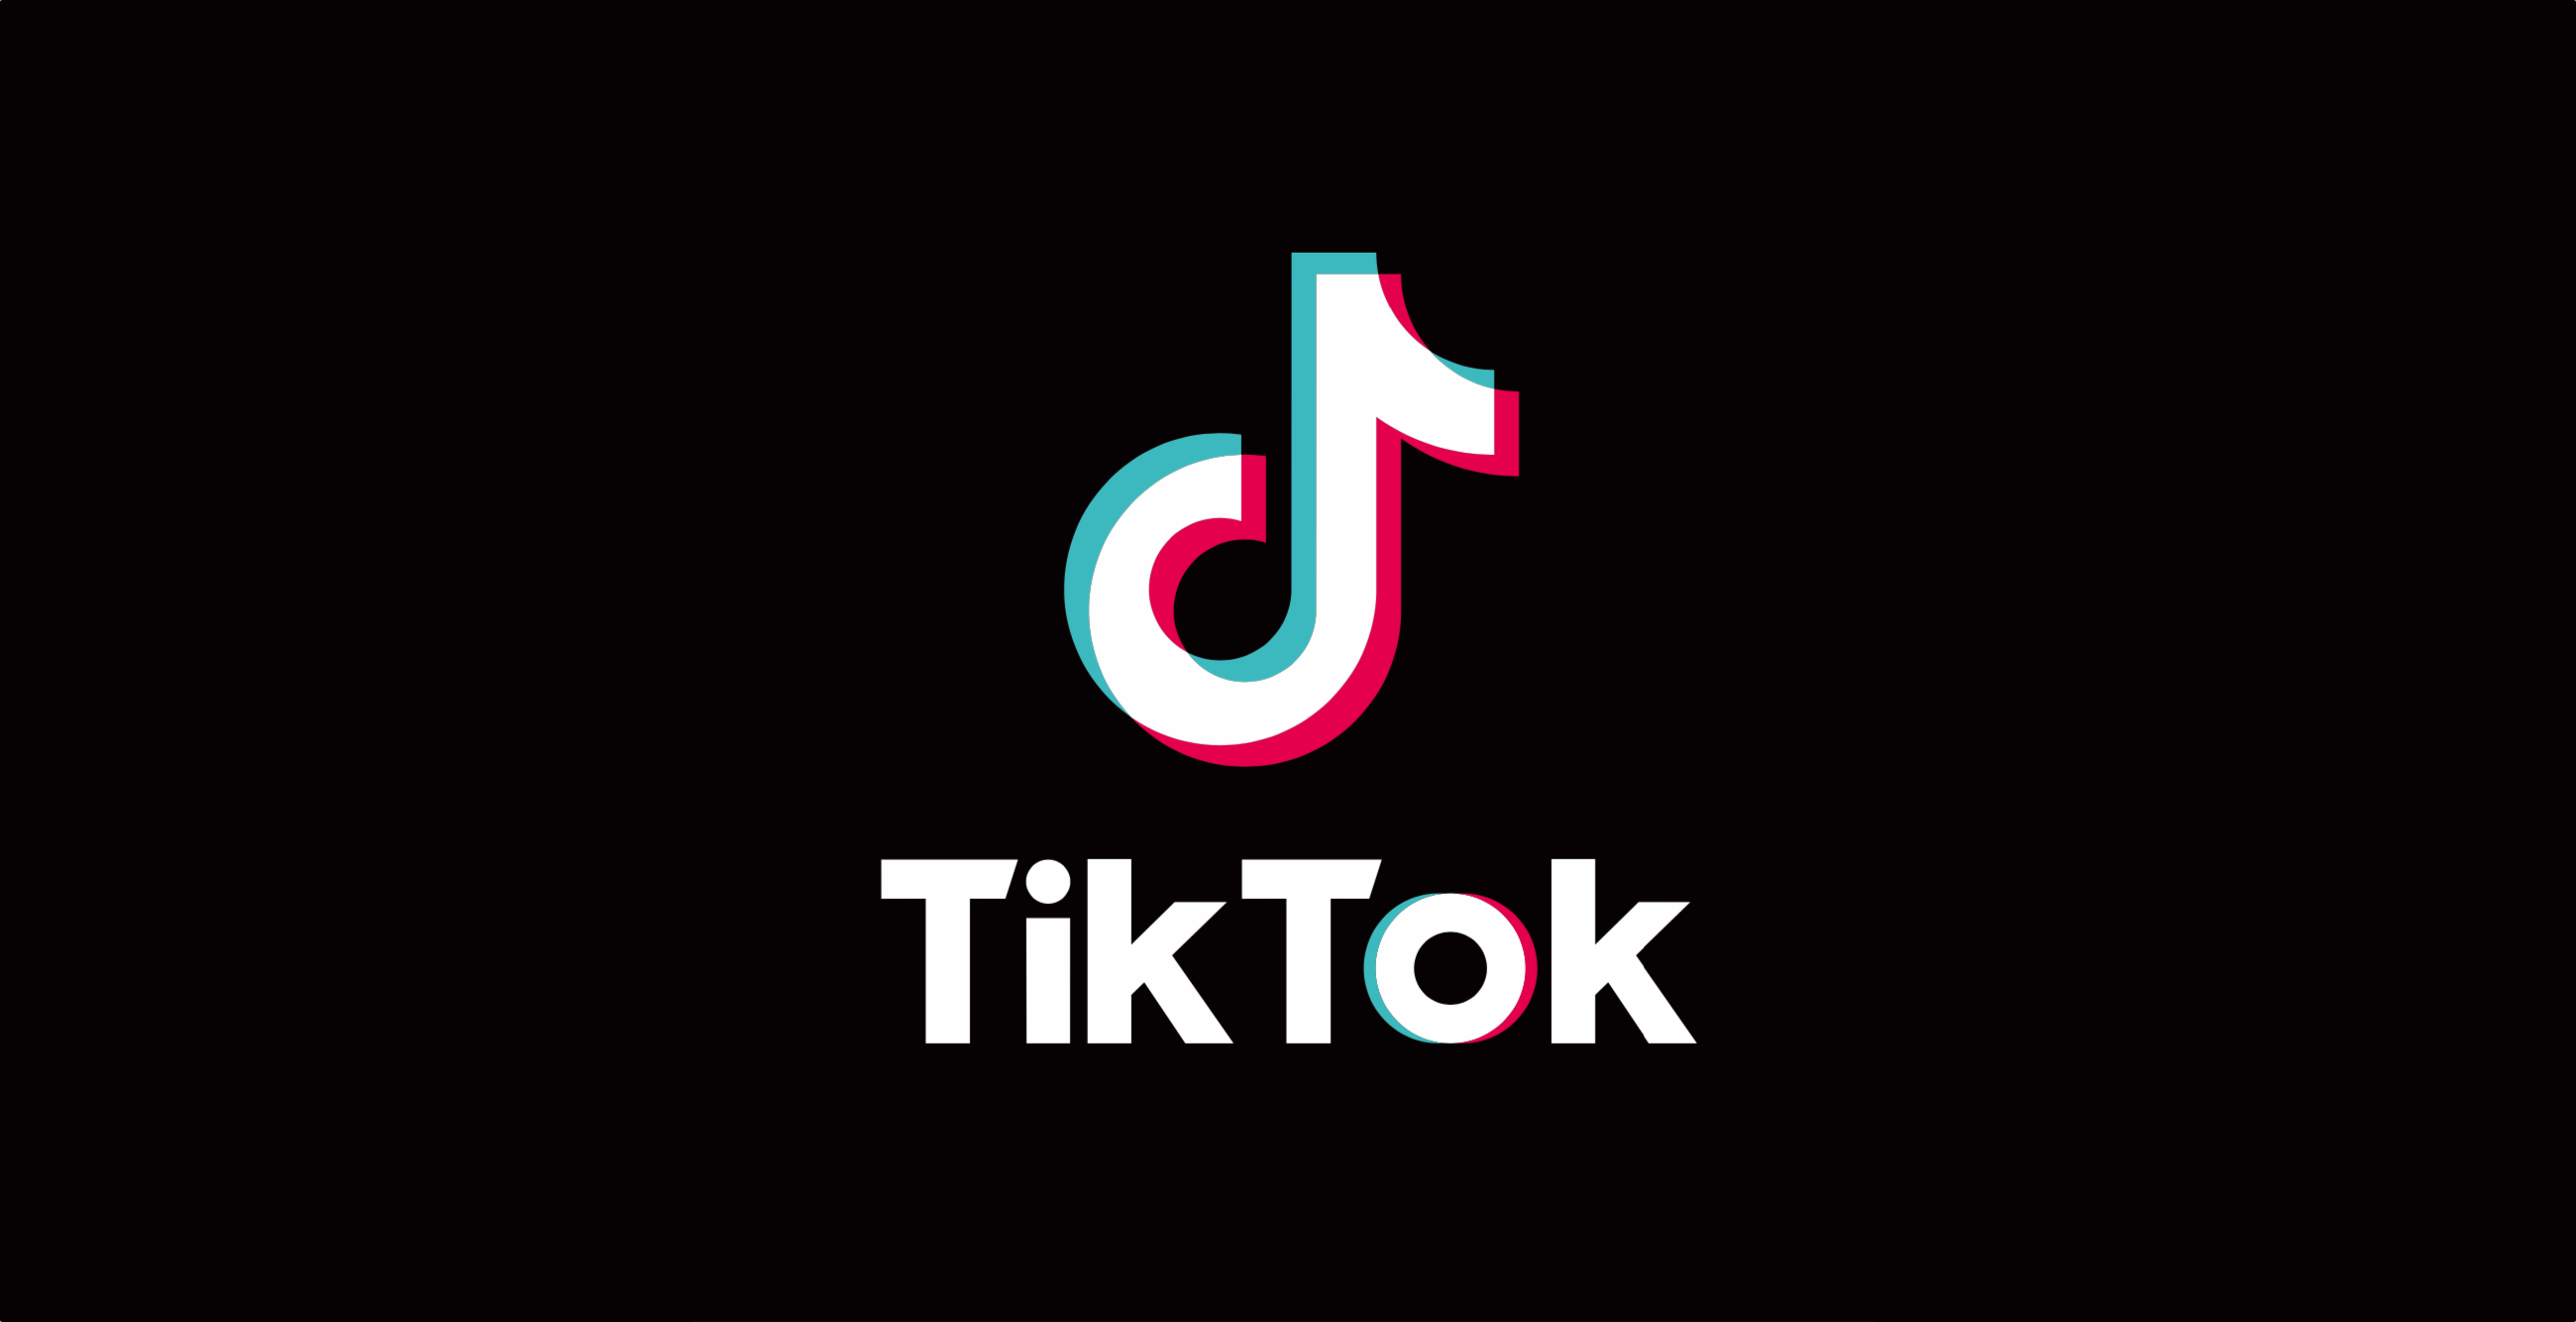 How To Get 1000 Followers On Tiktok?